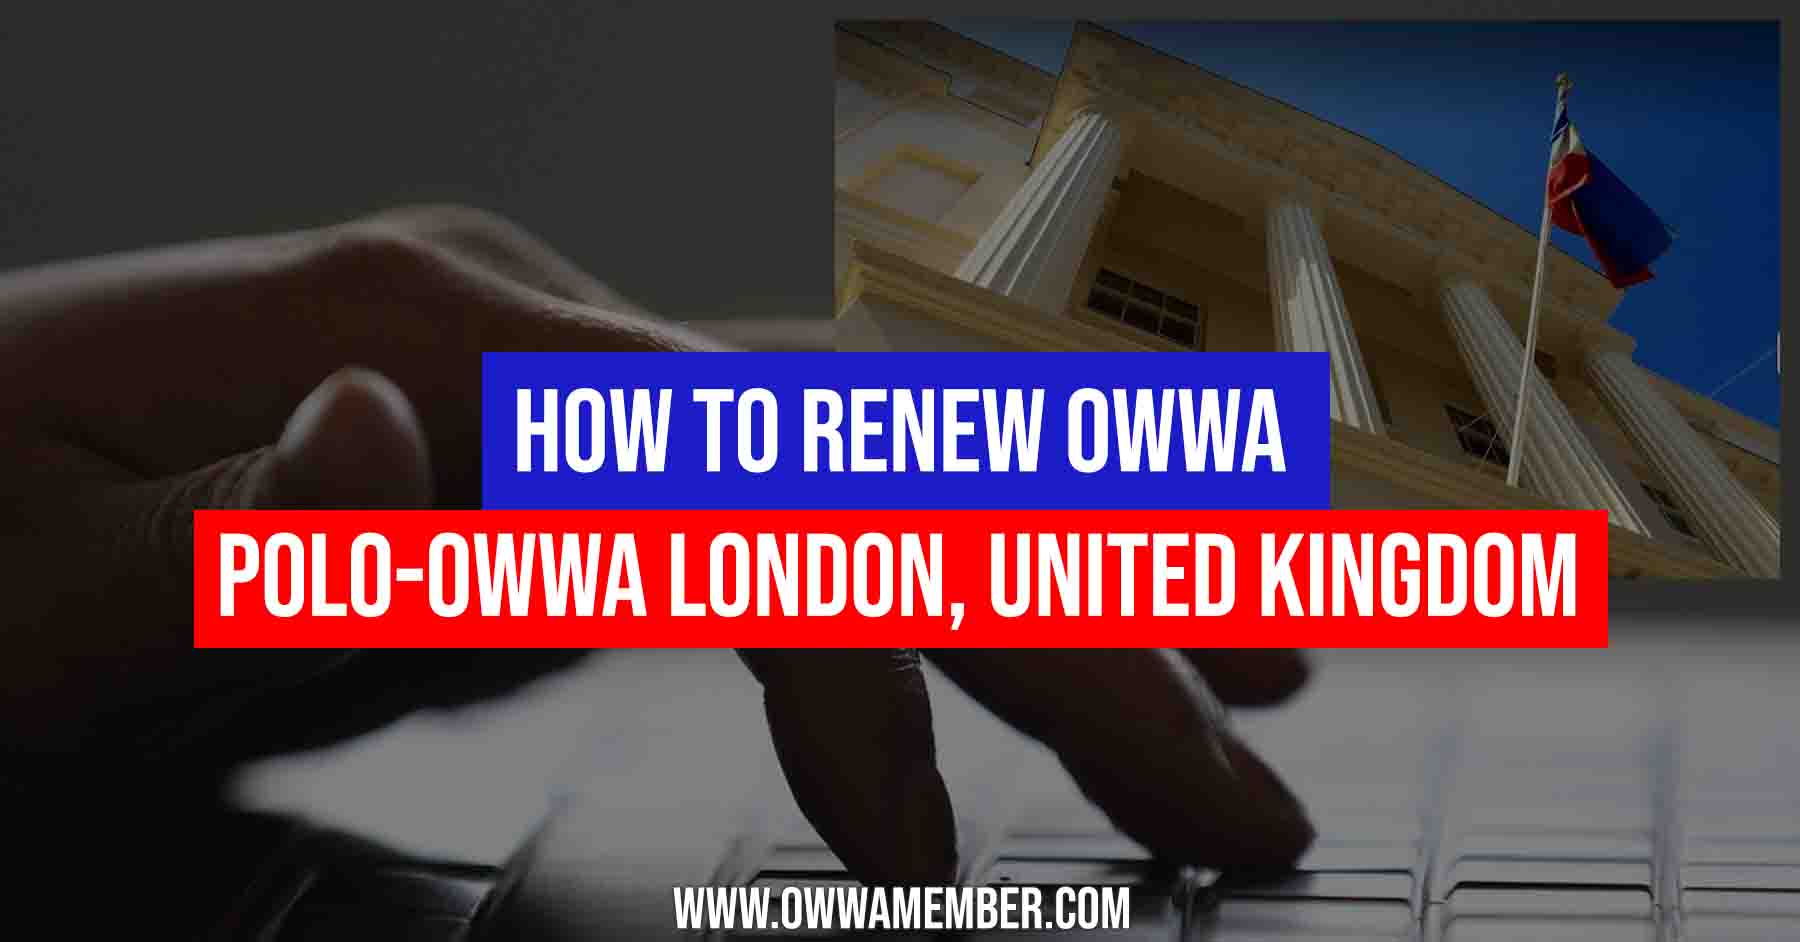 how to renew owwa membership in london uk